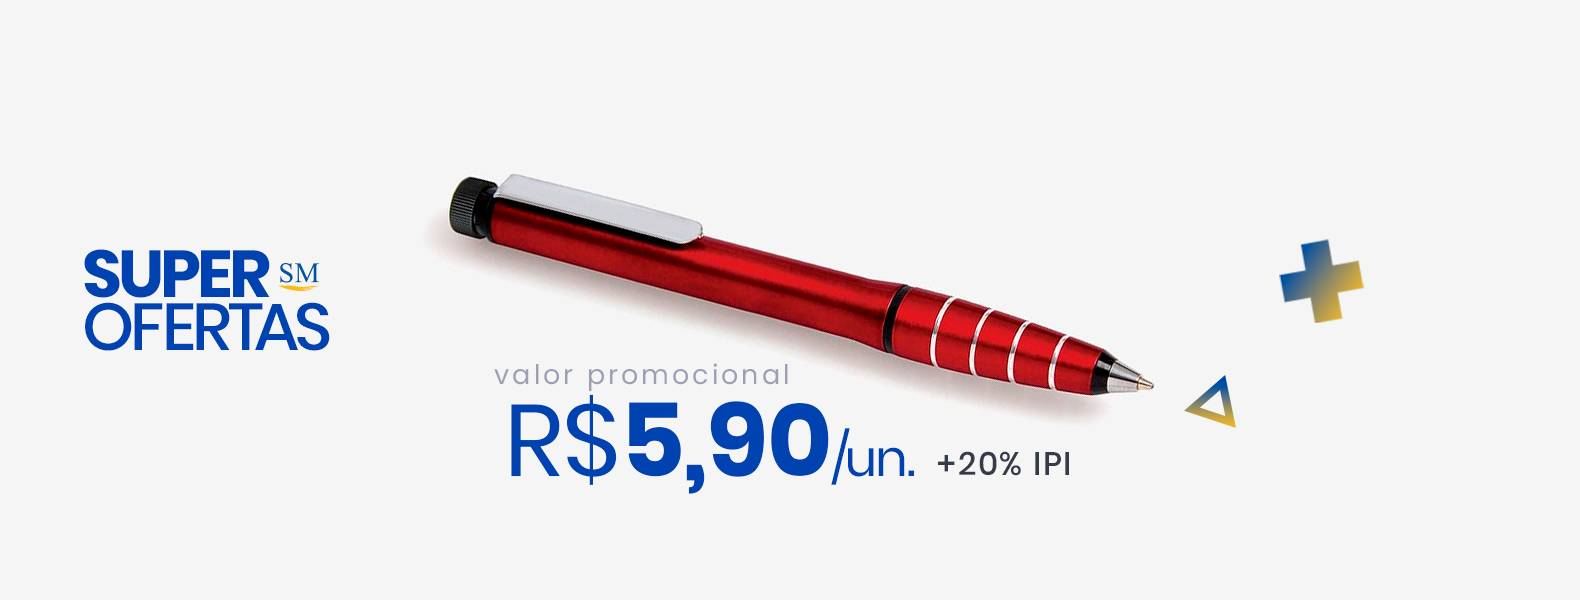 caneta-esferografica-em-aluminio-com-marca-texto-vermelha.